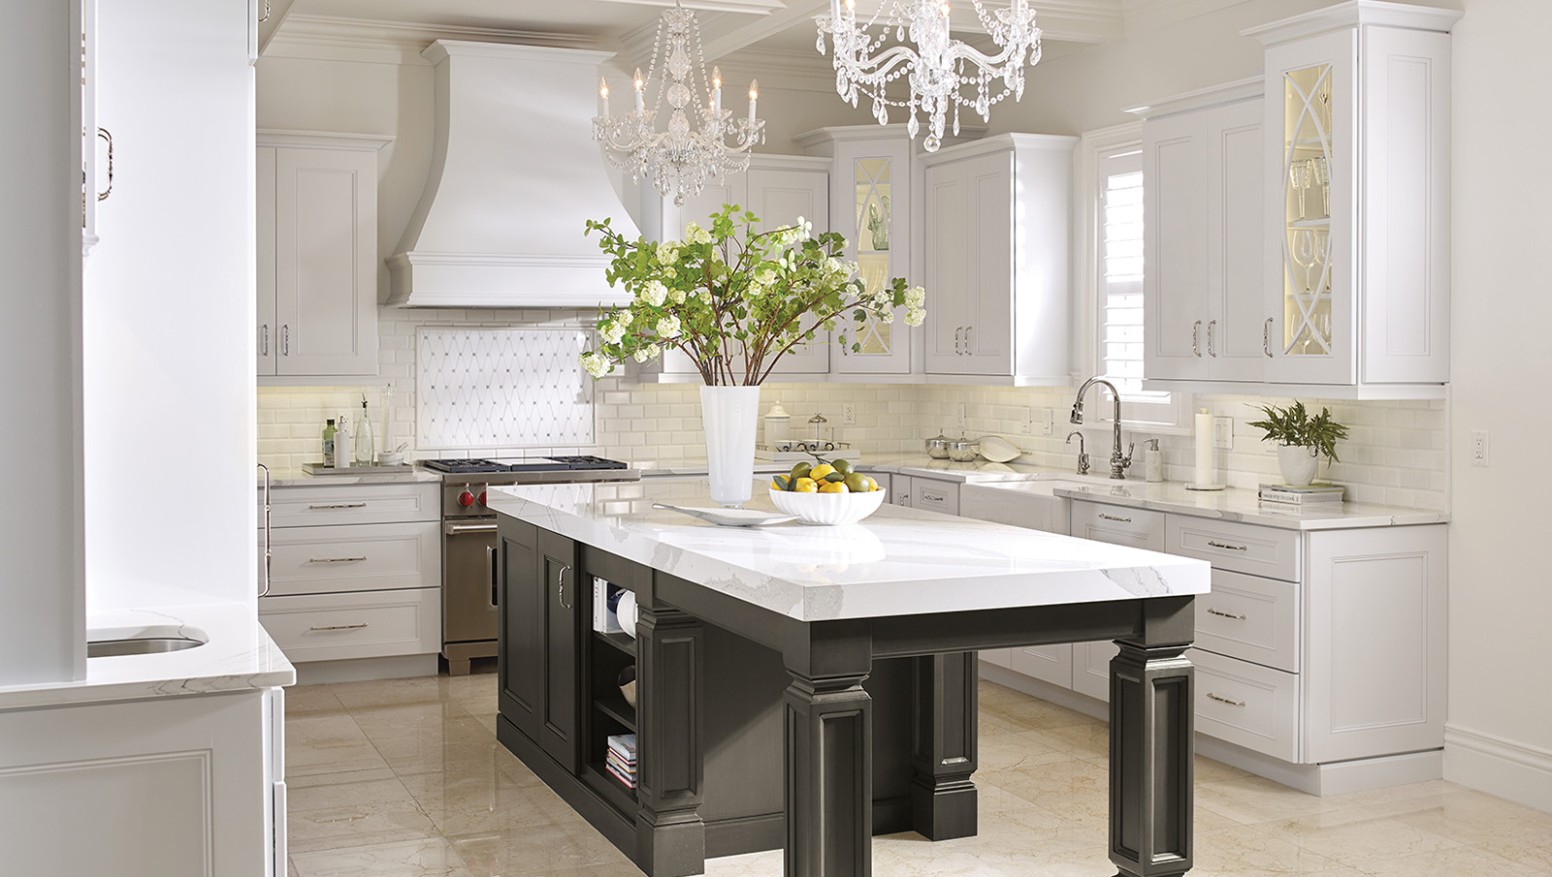 White Kitchen Cabinets with a Dark Grey Island - Omega - grey kitchen island with white cabinets